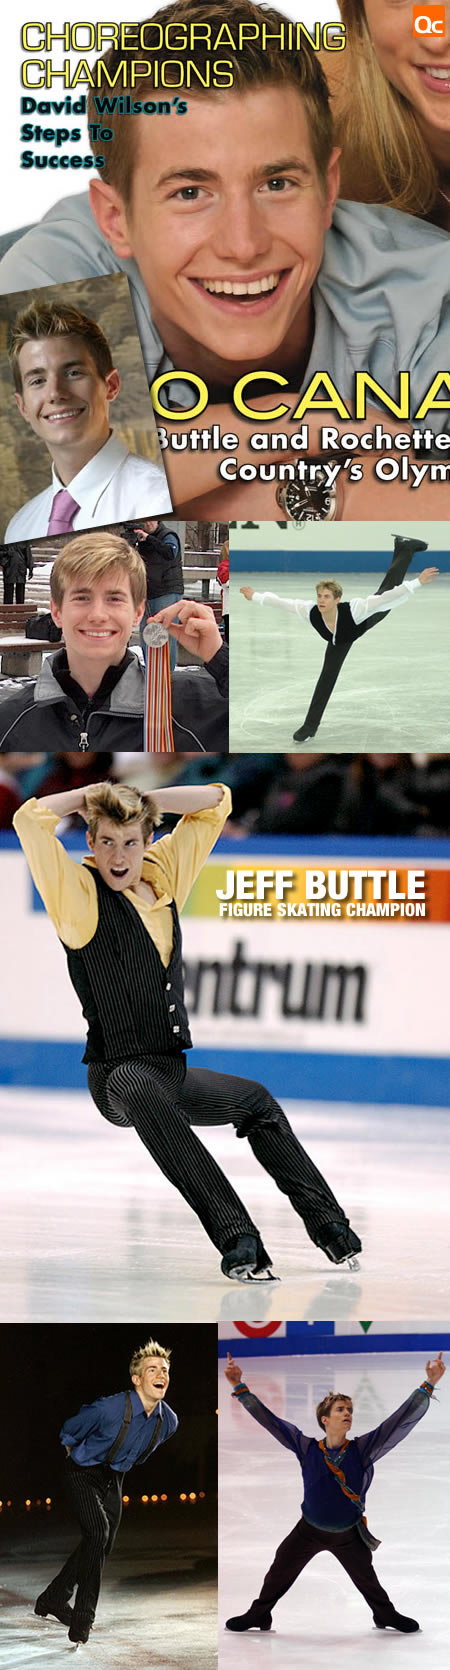 Jeff Buttle